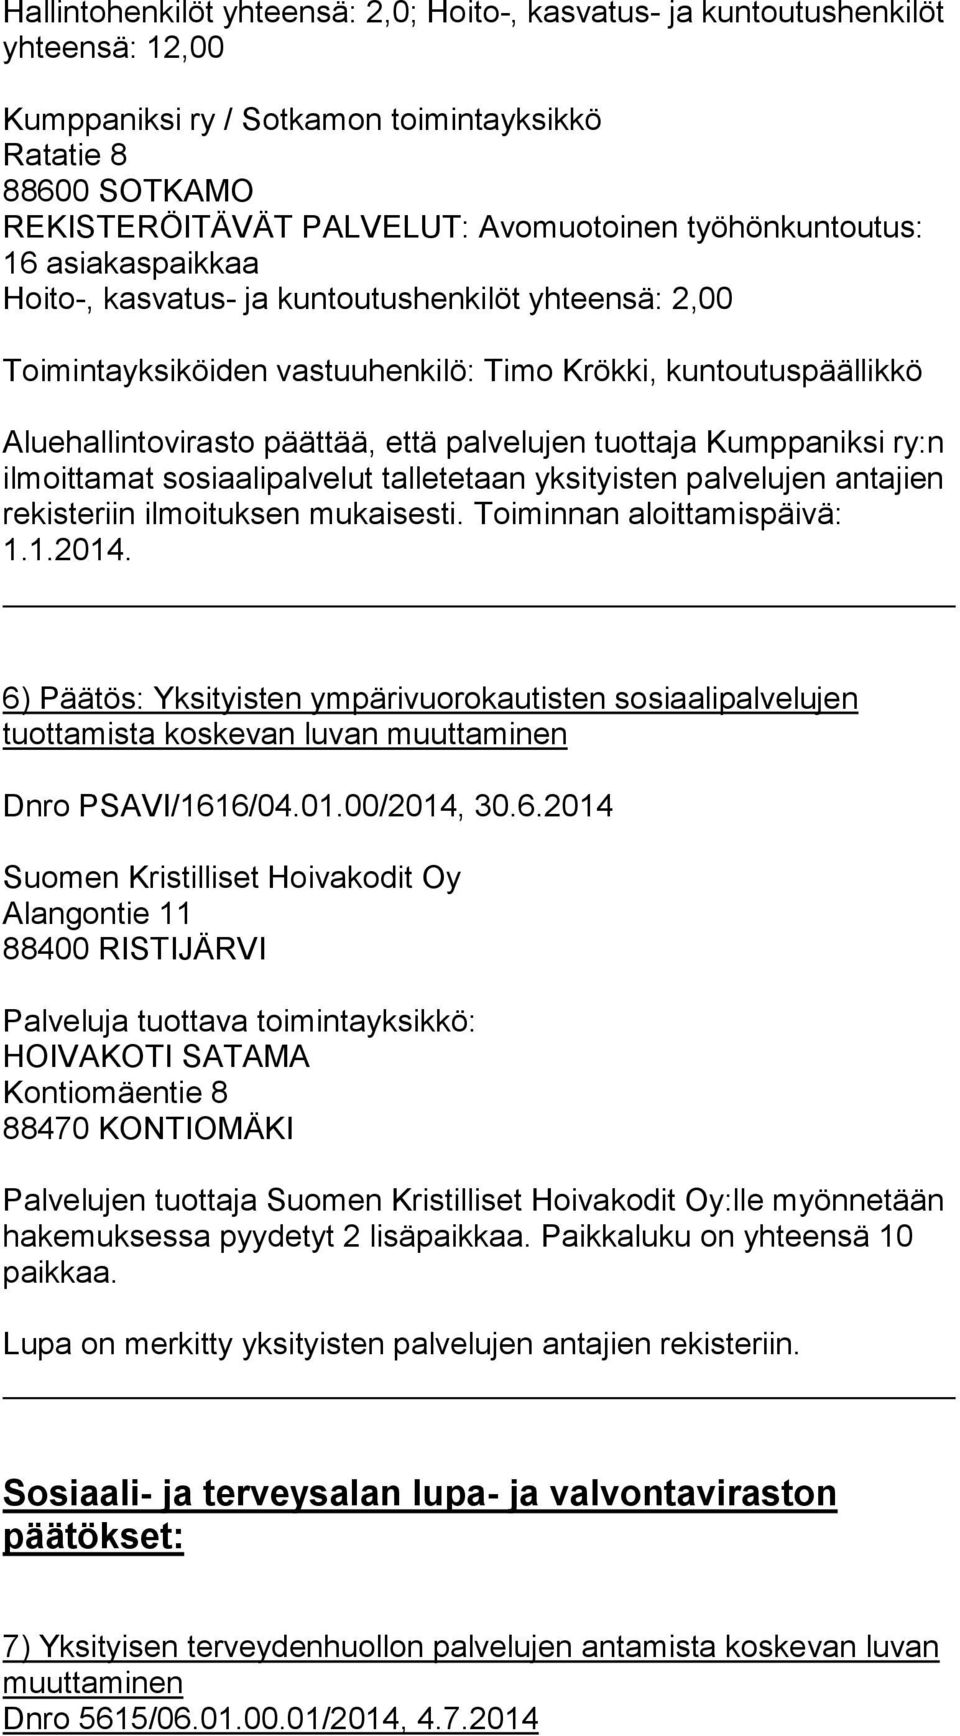 tuottaja Kumppaniksi ry:n ilmoittamat sosiaalipalvelut talletetaan yksityisten palvelujen antajien rekisteriin ilmoituksen mukaisesti. Toiminnan aloittamispäivä: 1.1.2014.